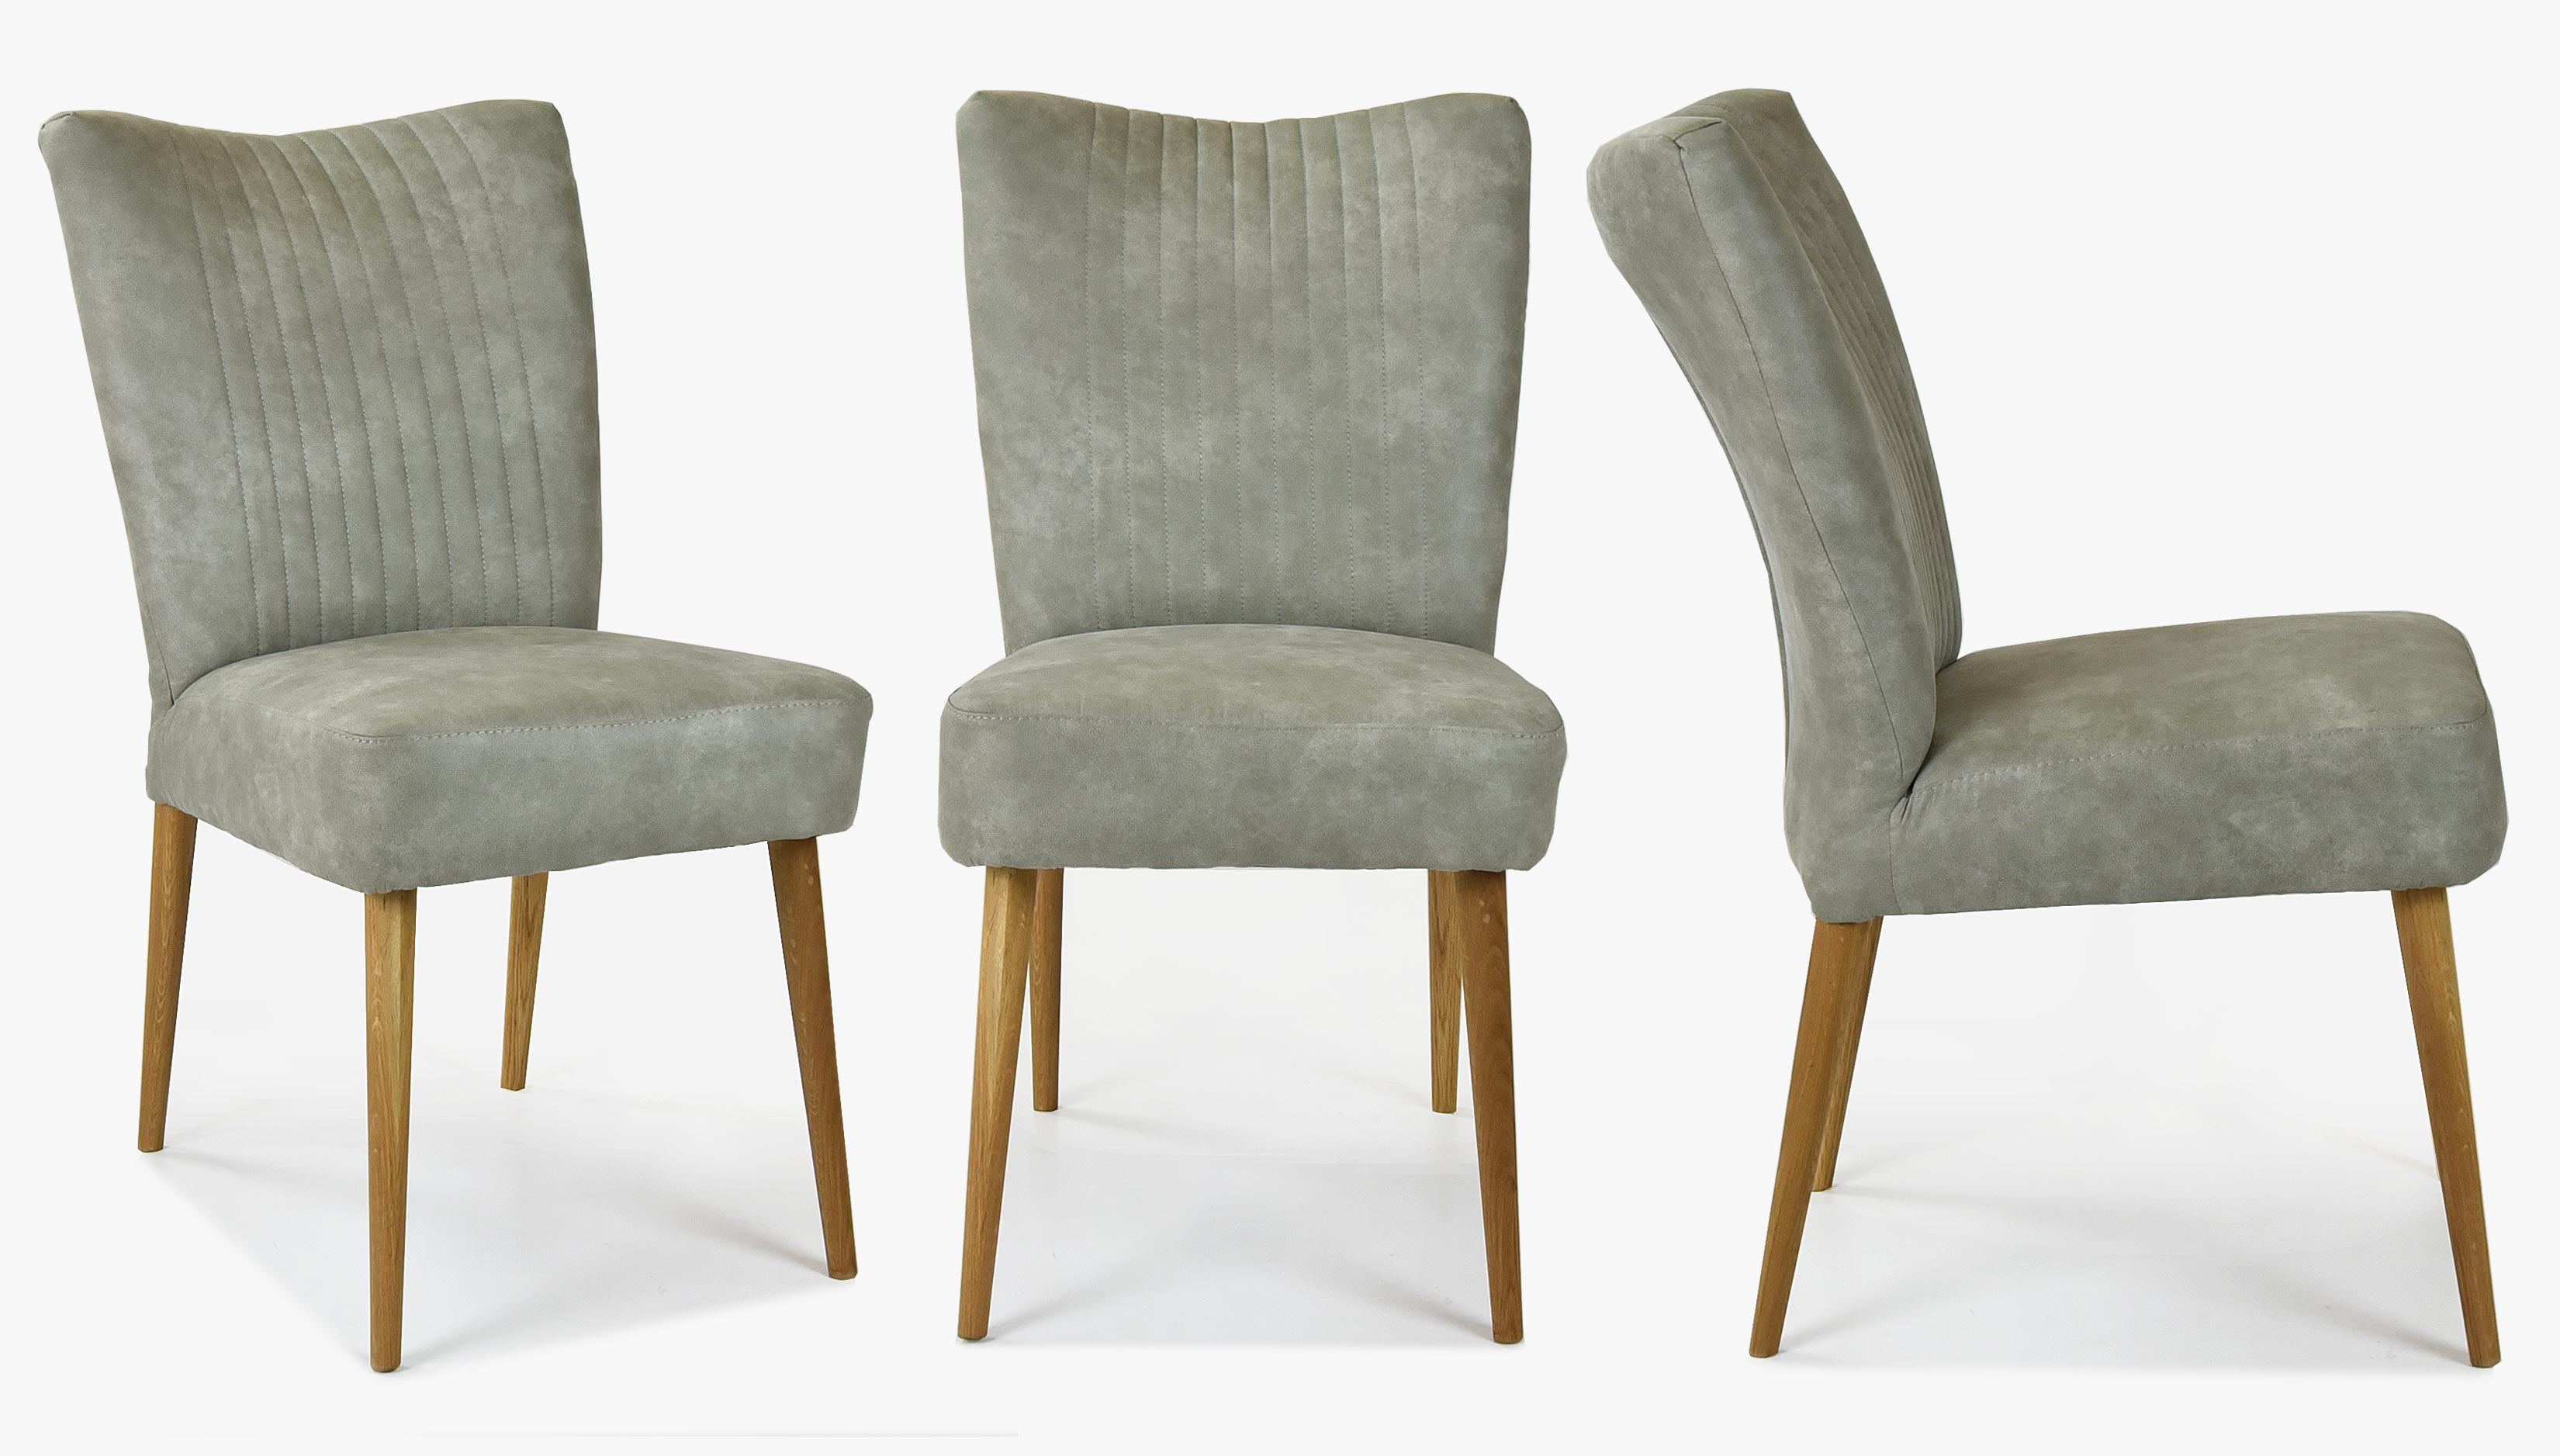 Elegantní židle valencia - kulaté nohy dub, šedá mátové